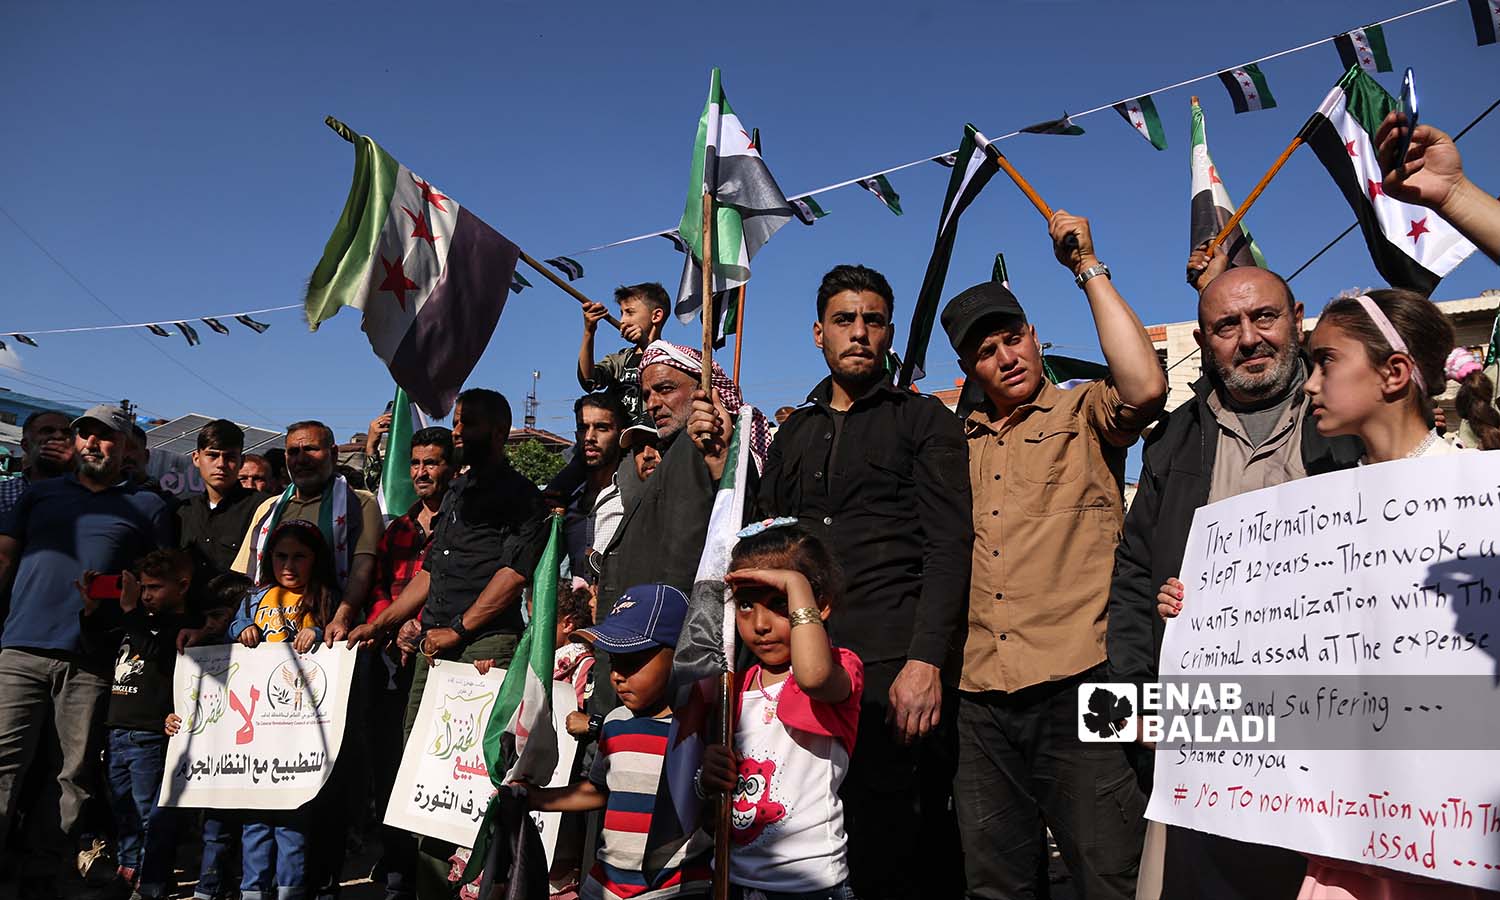 مظاهرة في مدينة عفرين  تحت شعار "لا للتطبيع مع الأسد " - 23 من نيسان 2023 (عنب بلدي/ أمير خربطلي)